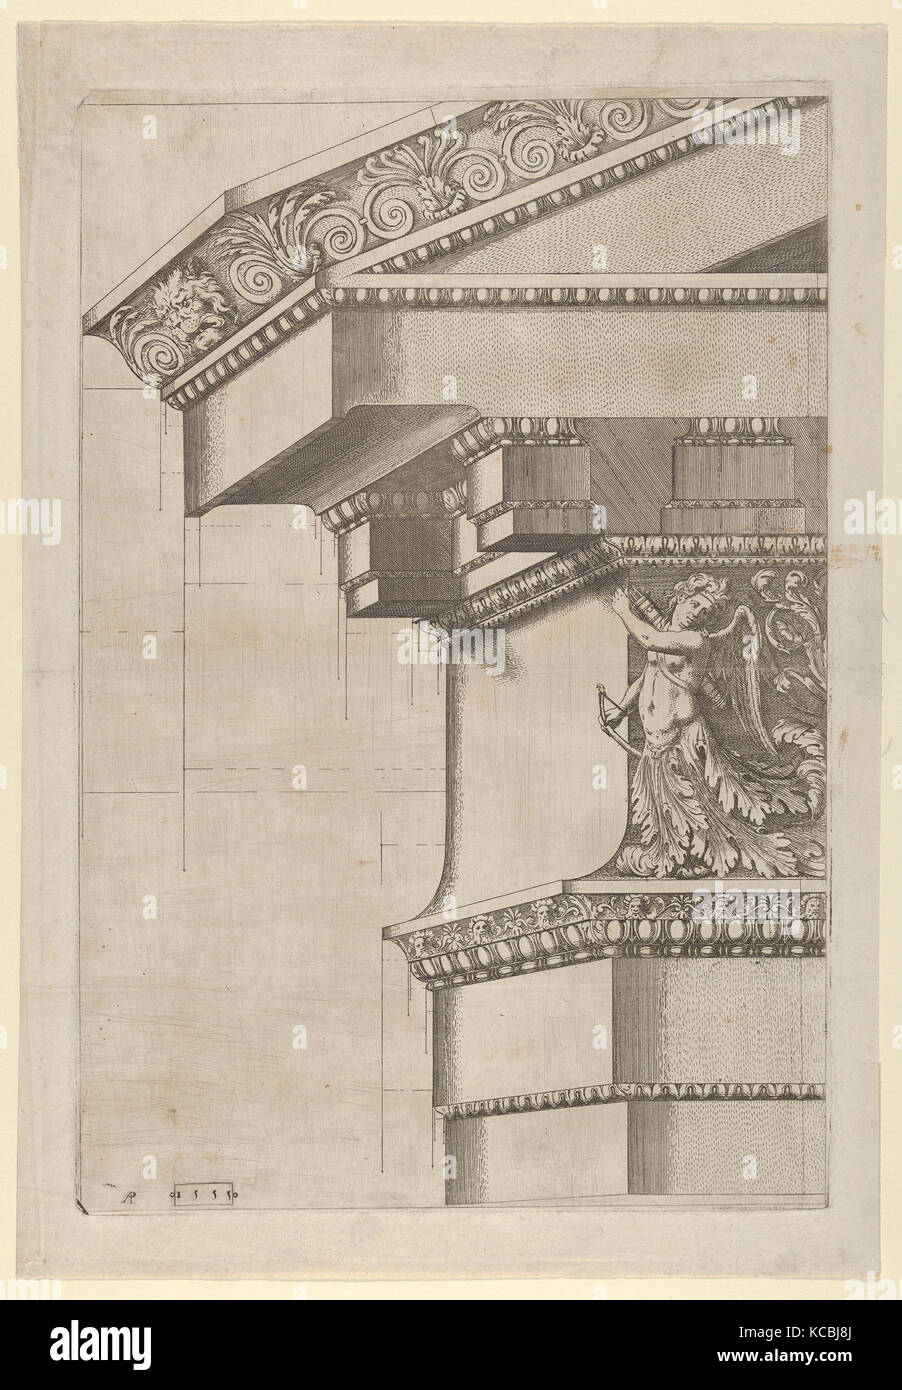 El Templo de Serapis, frontón y cornisa, vista de proyección, Master AP, 1555 Foto de stock